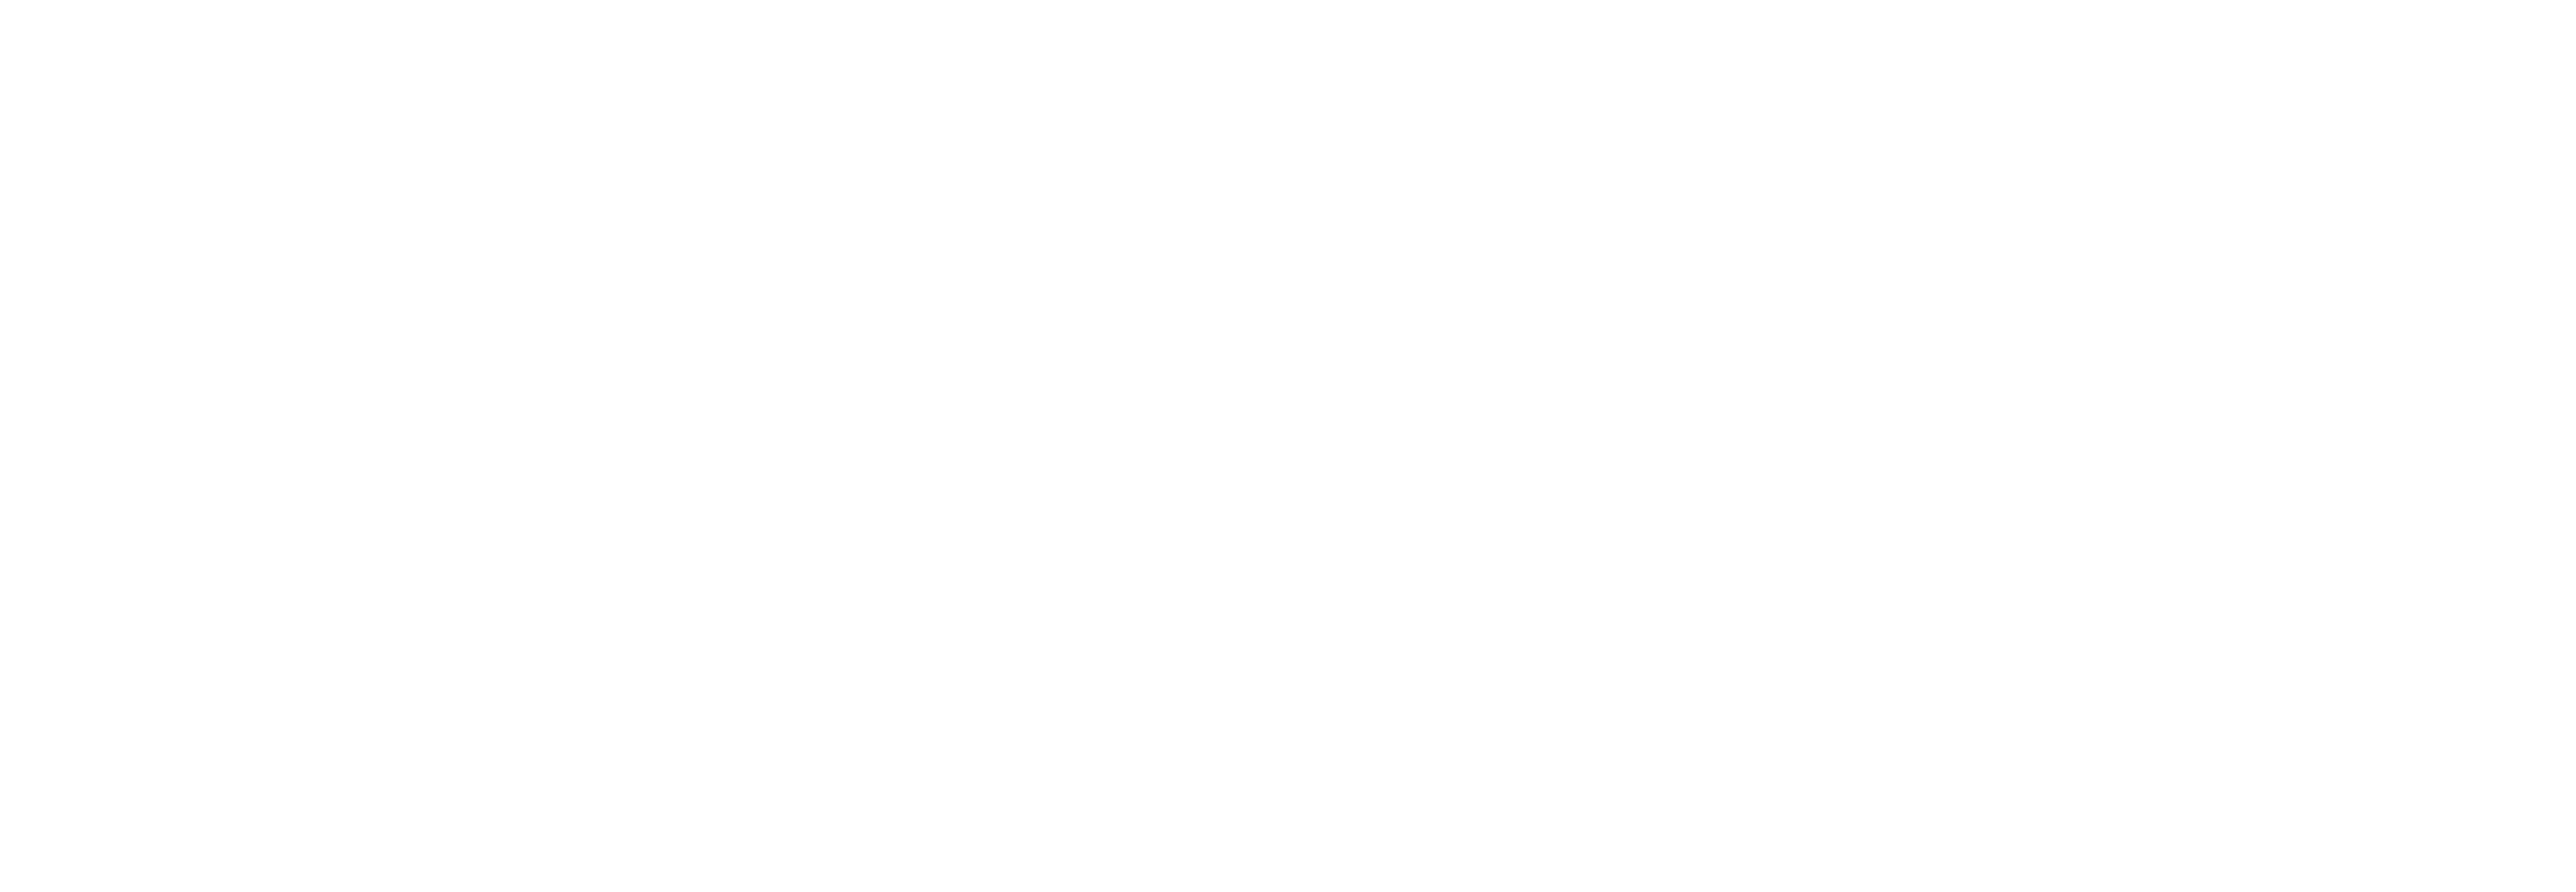 Merasa: 7 days of regeneration